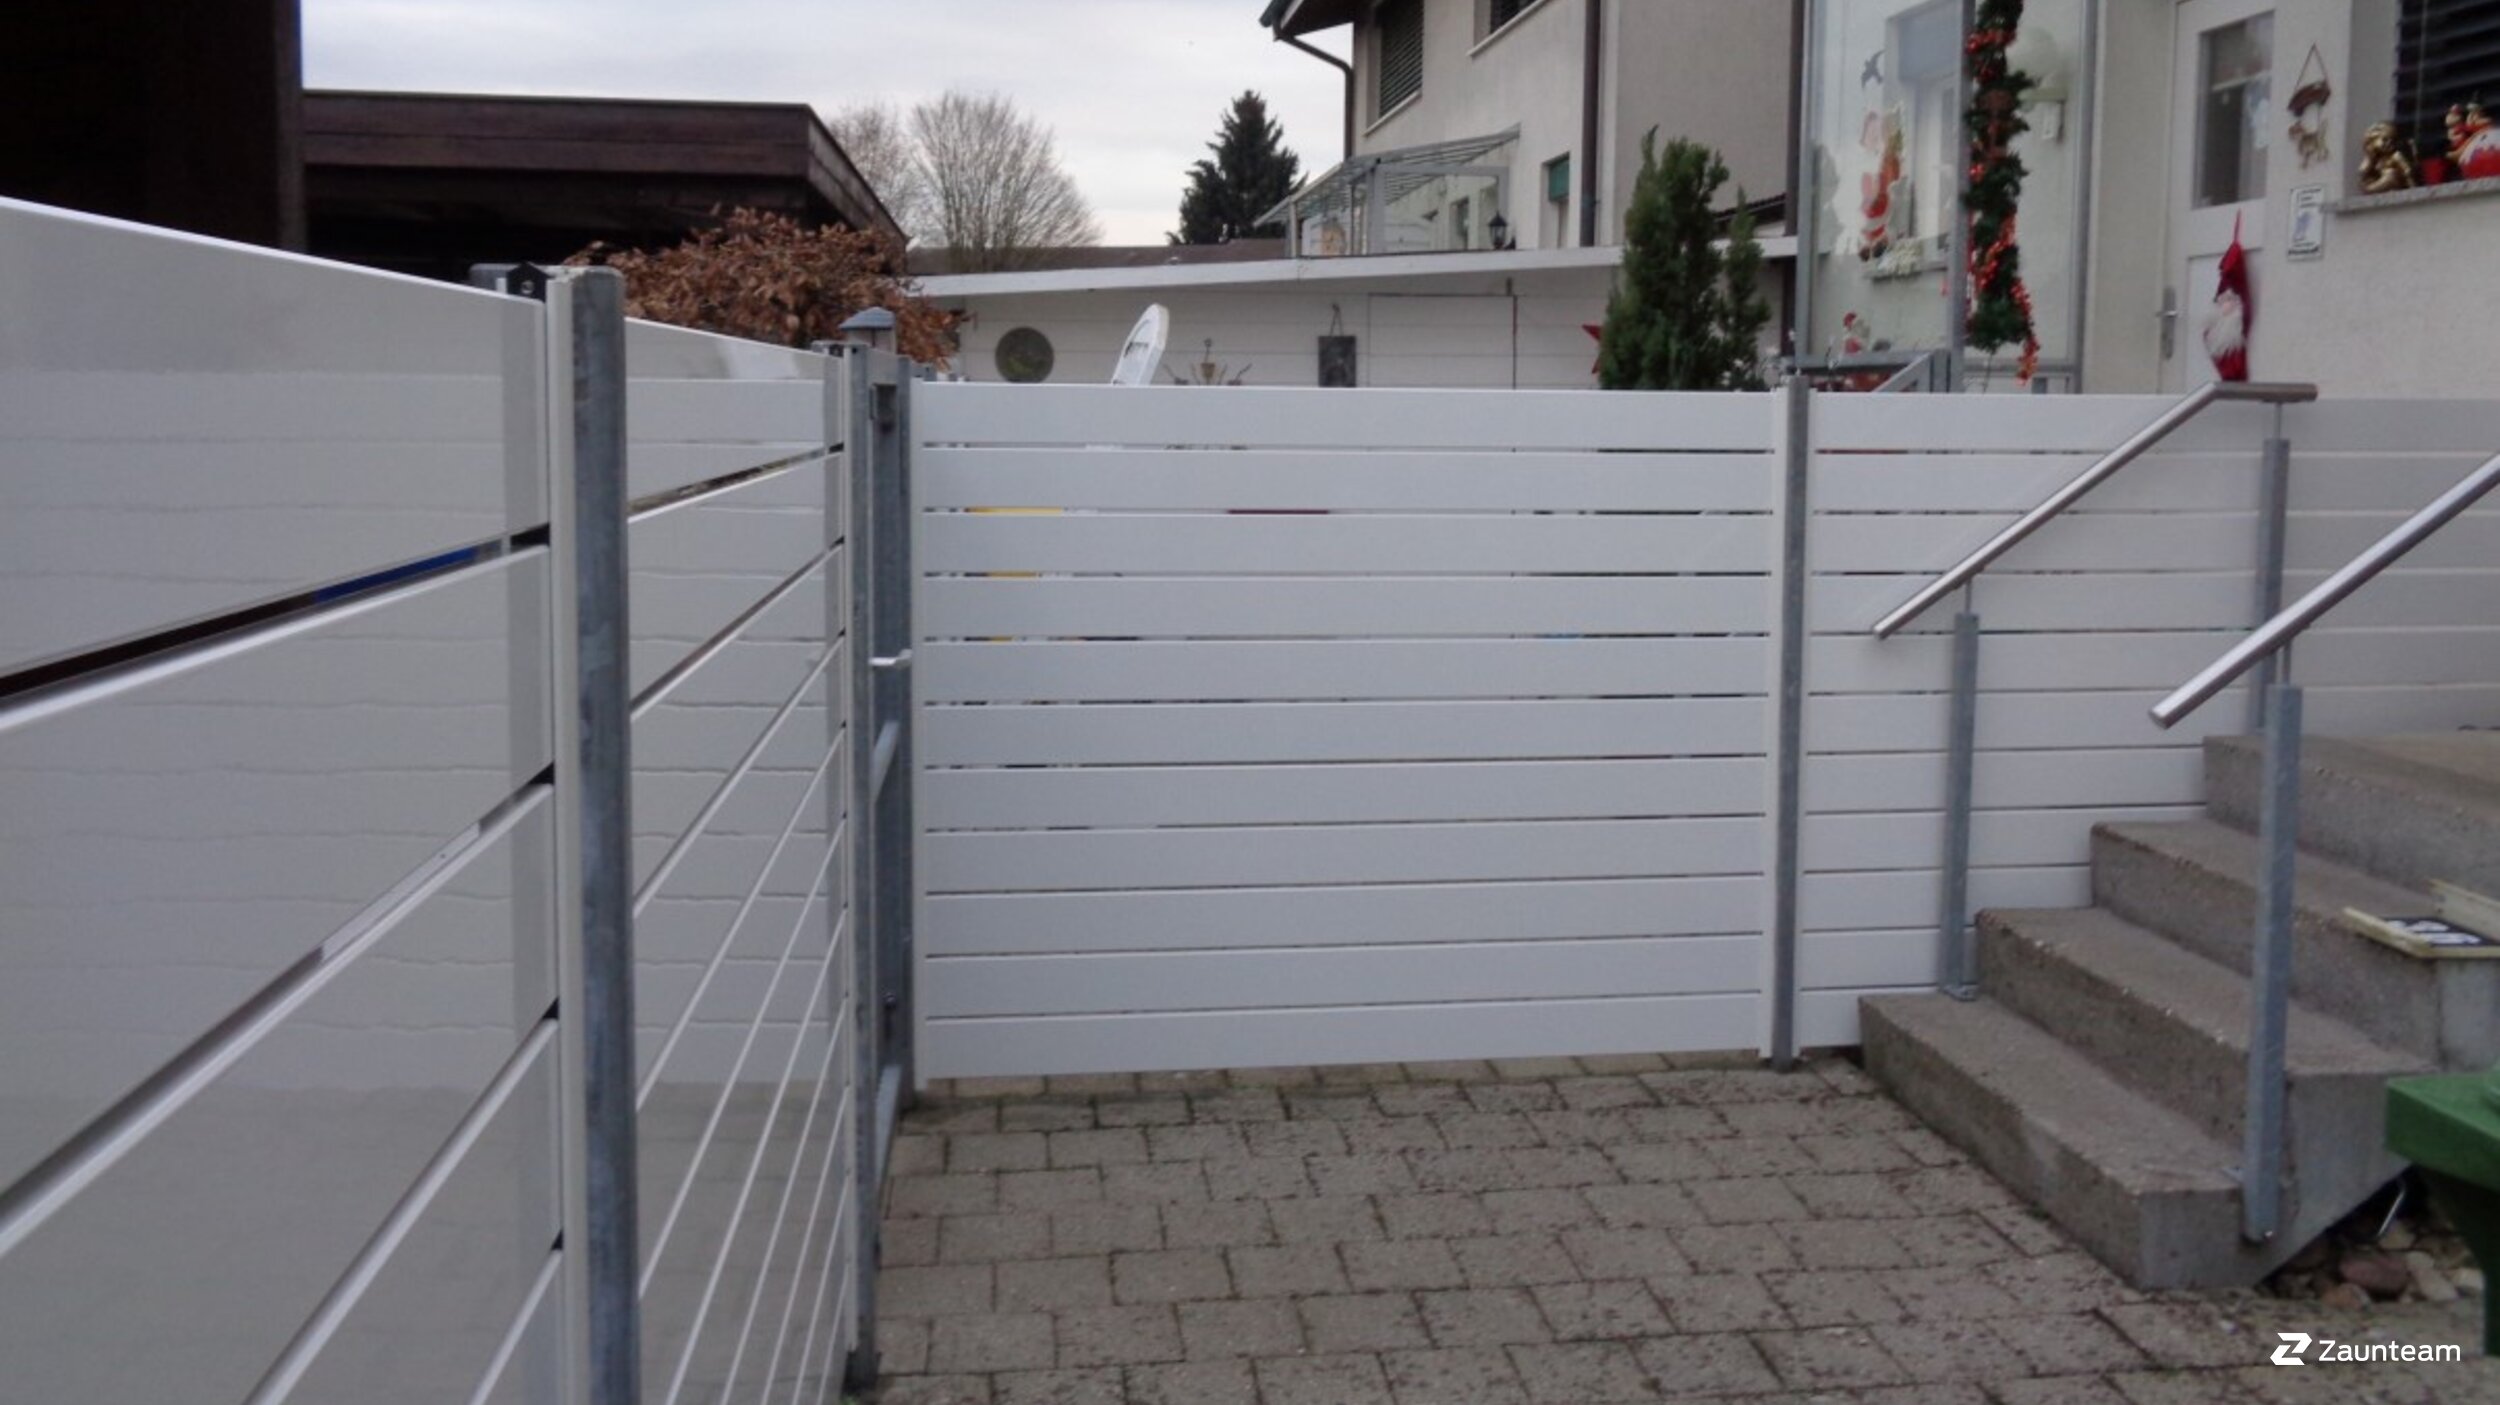 Protection brise-vue en aluminium de 2018 à 4552 Derendingen Suisse de Zaunteam Mittelland GmbH.